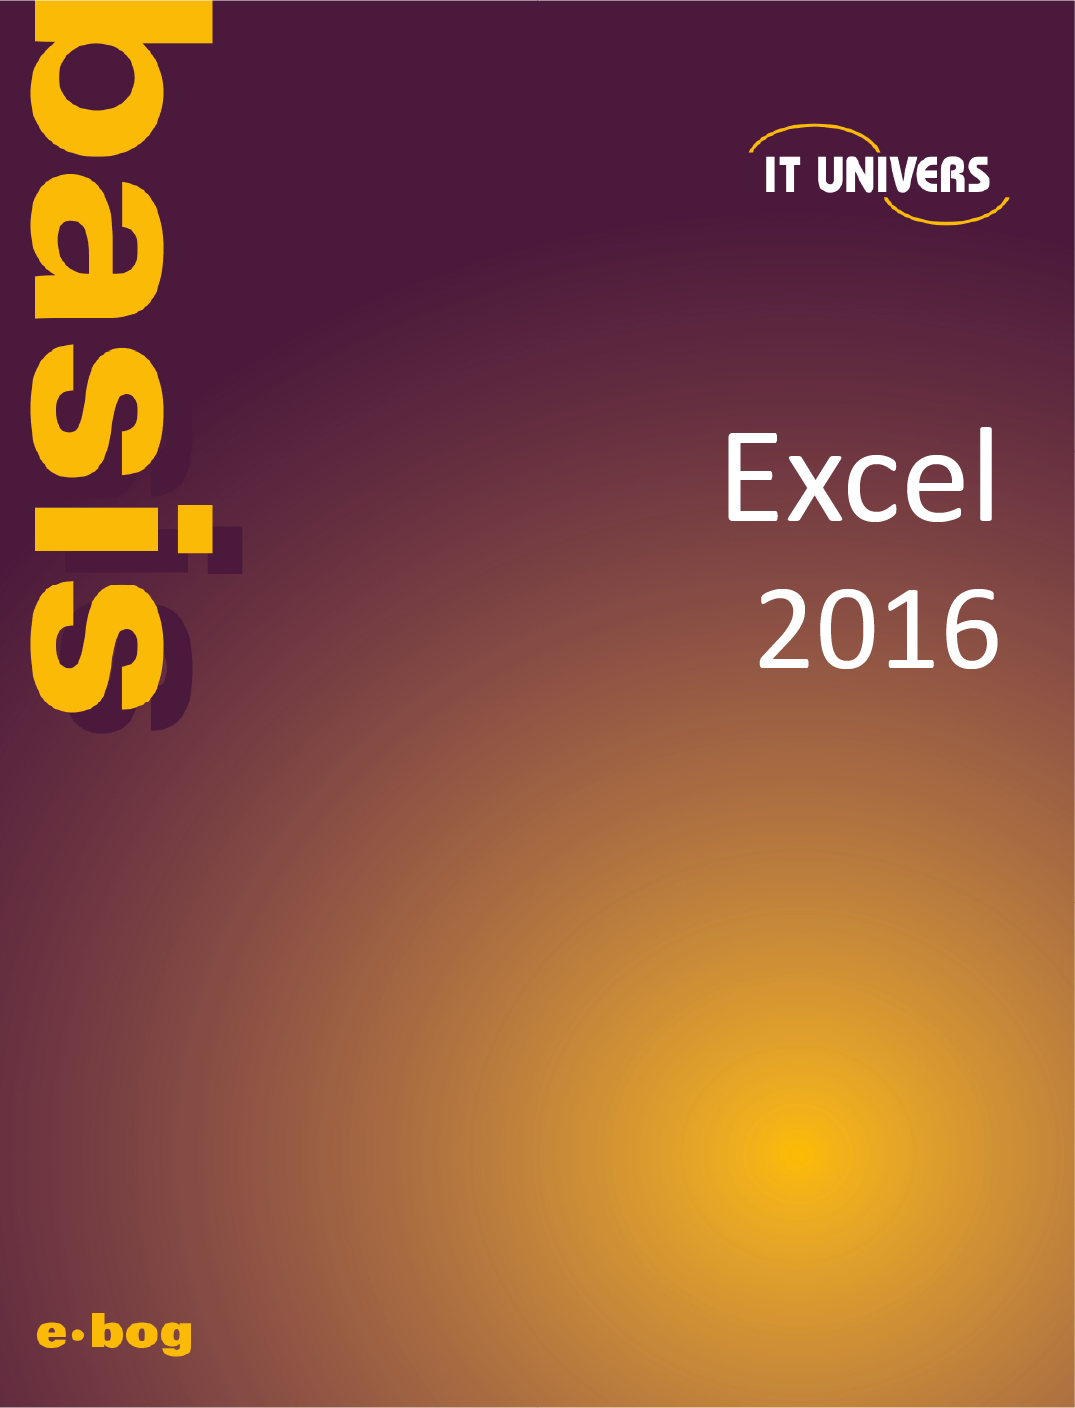 Excel 2016 basis e-bog, IT Univers 2023, shop e-bøger hos os